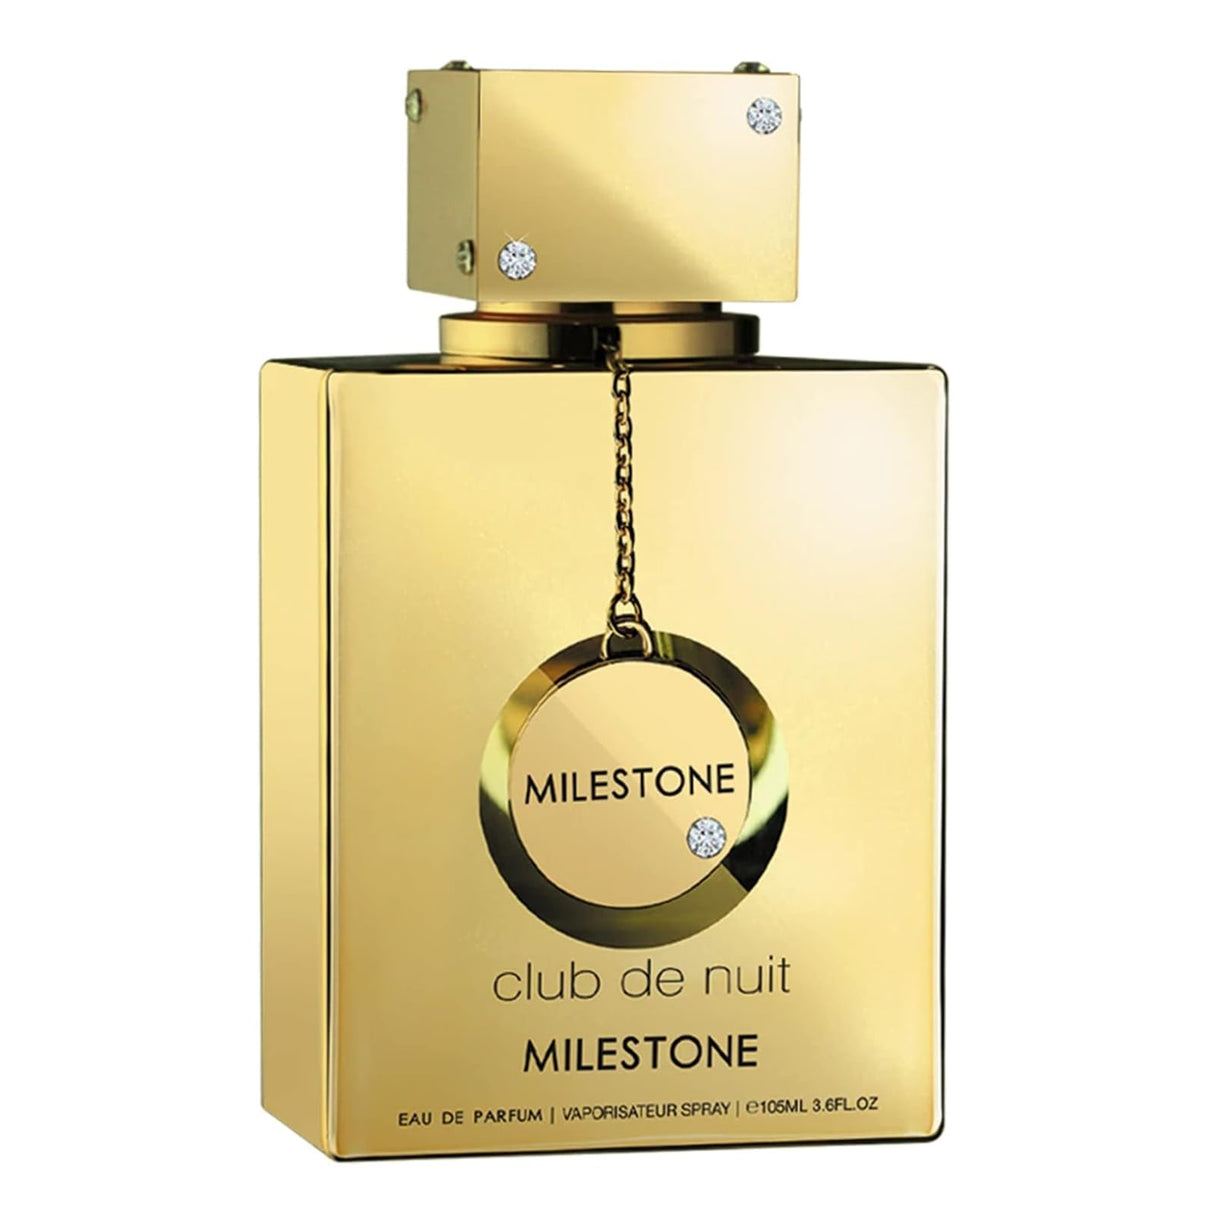 ARMAF Club de Nuit Milestone - Luxury & Authentic Fragrance - Unisex Eau De Parfum  - 3.6Fl Oz / 105ml